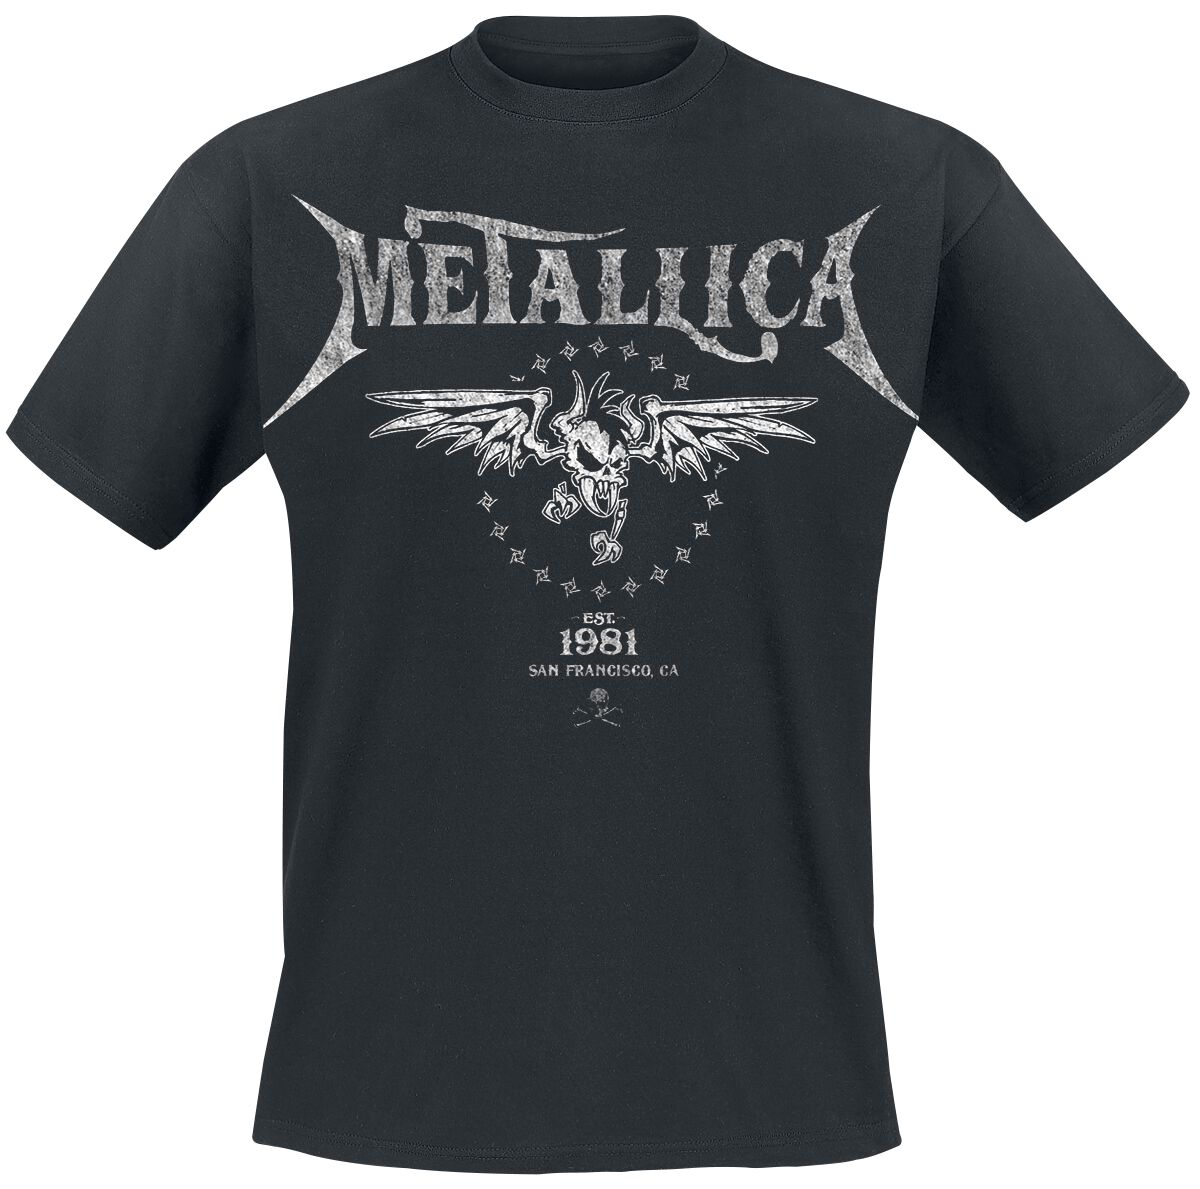 Metallica T-Shirt - Biker - S bis 5XL - für Männer - Größe 3XL - schwarz  - Lizenziertes Merchandise!